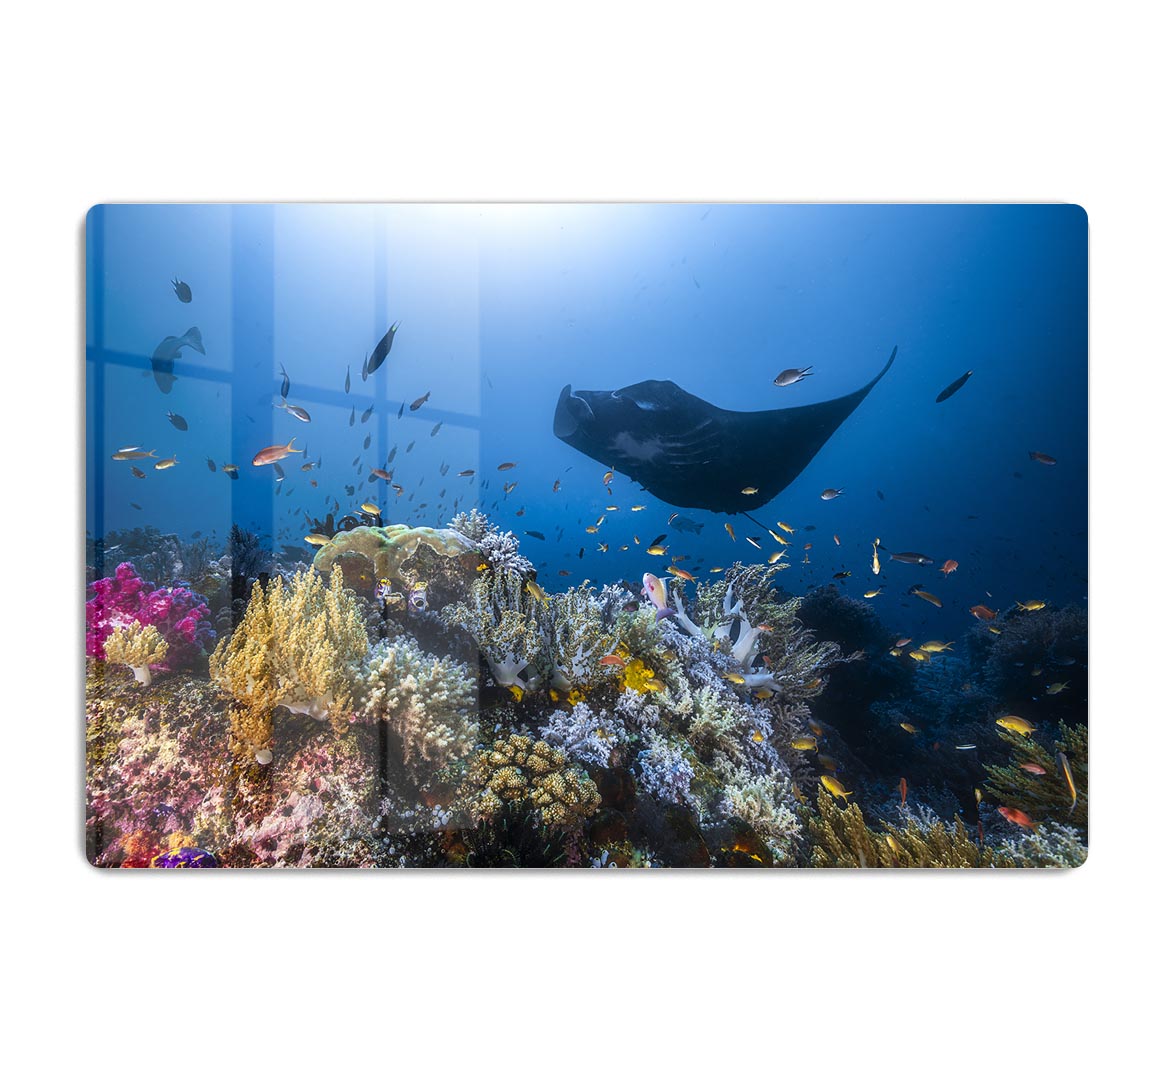 Manta Reef On The Reef HD Metal Print - Canvas Art Rocks - 1